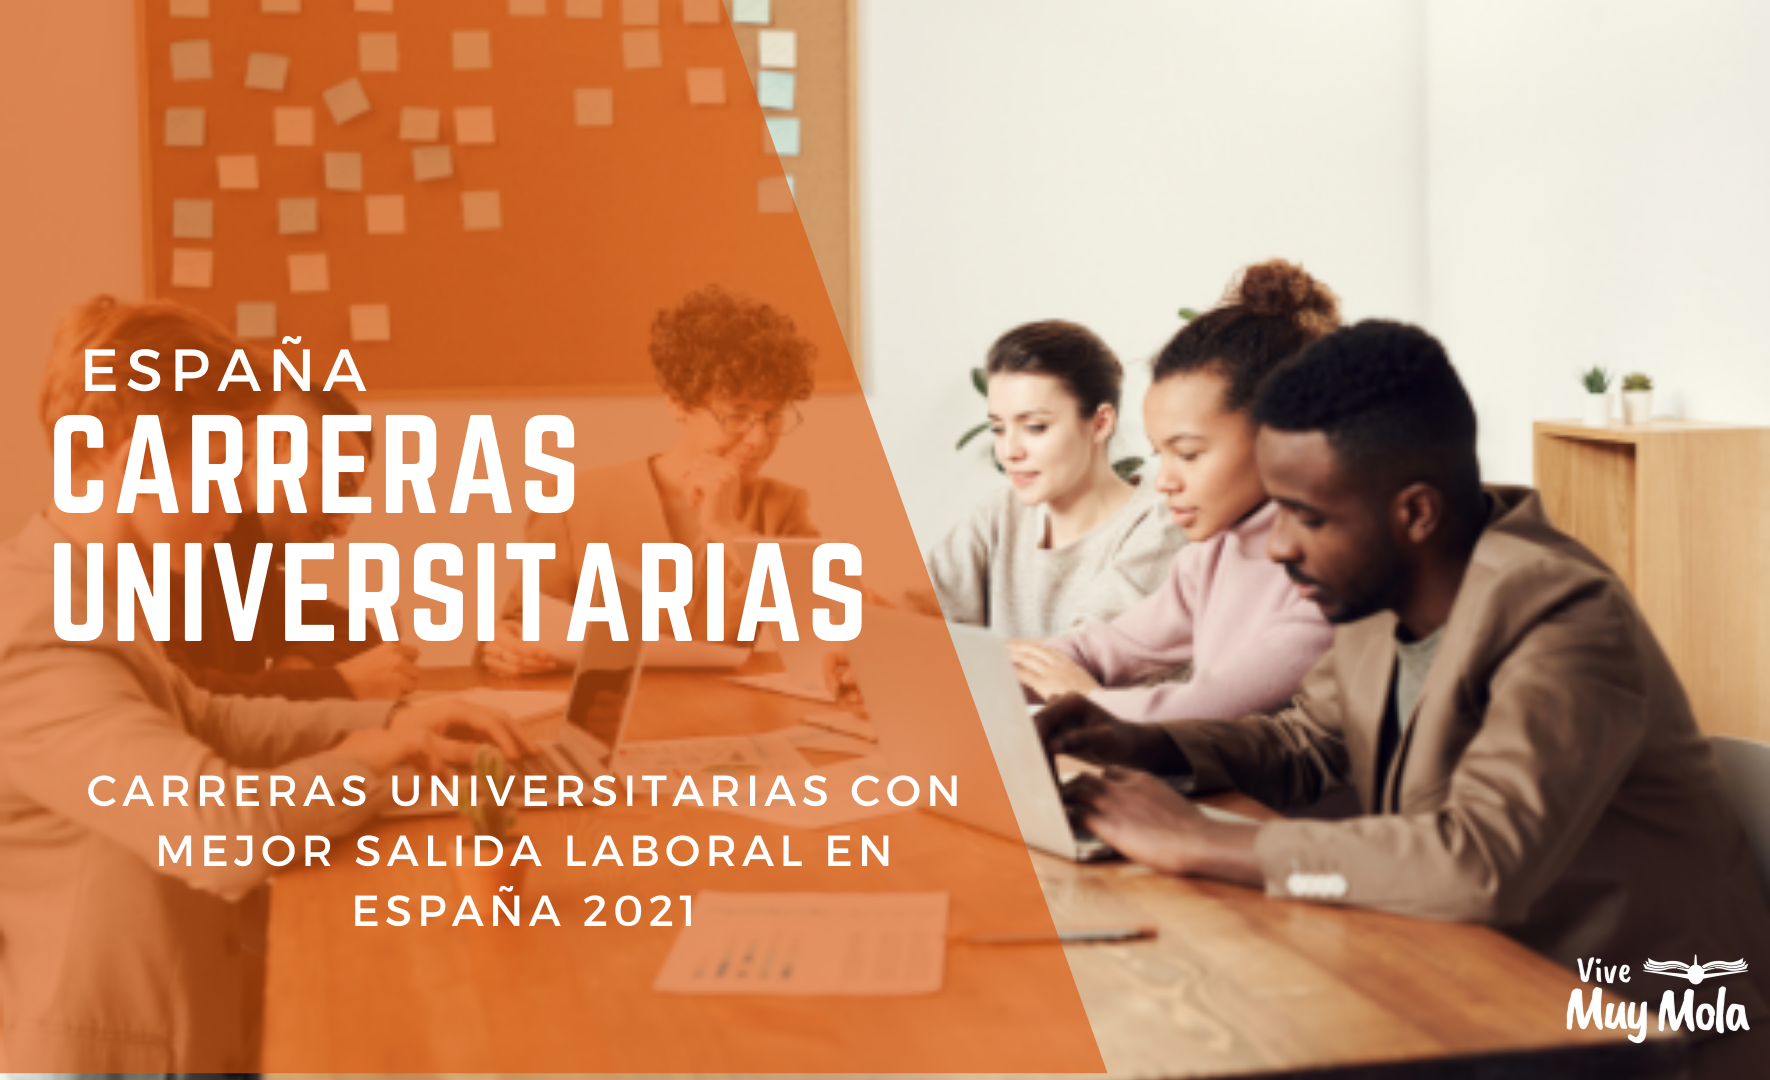 En este momento estás viendo Carreras universitarias en España con mejor salida laboral en 2021.